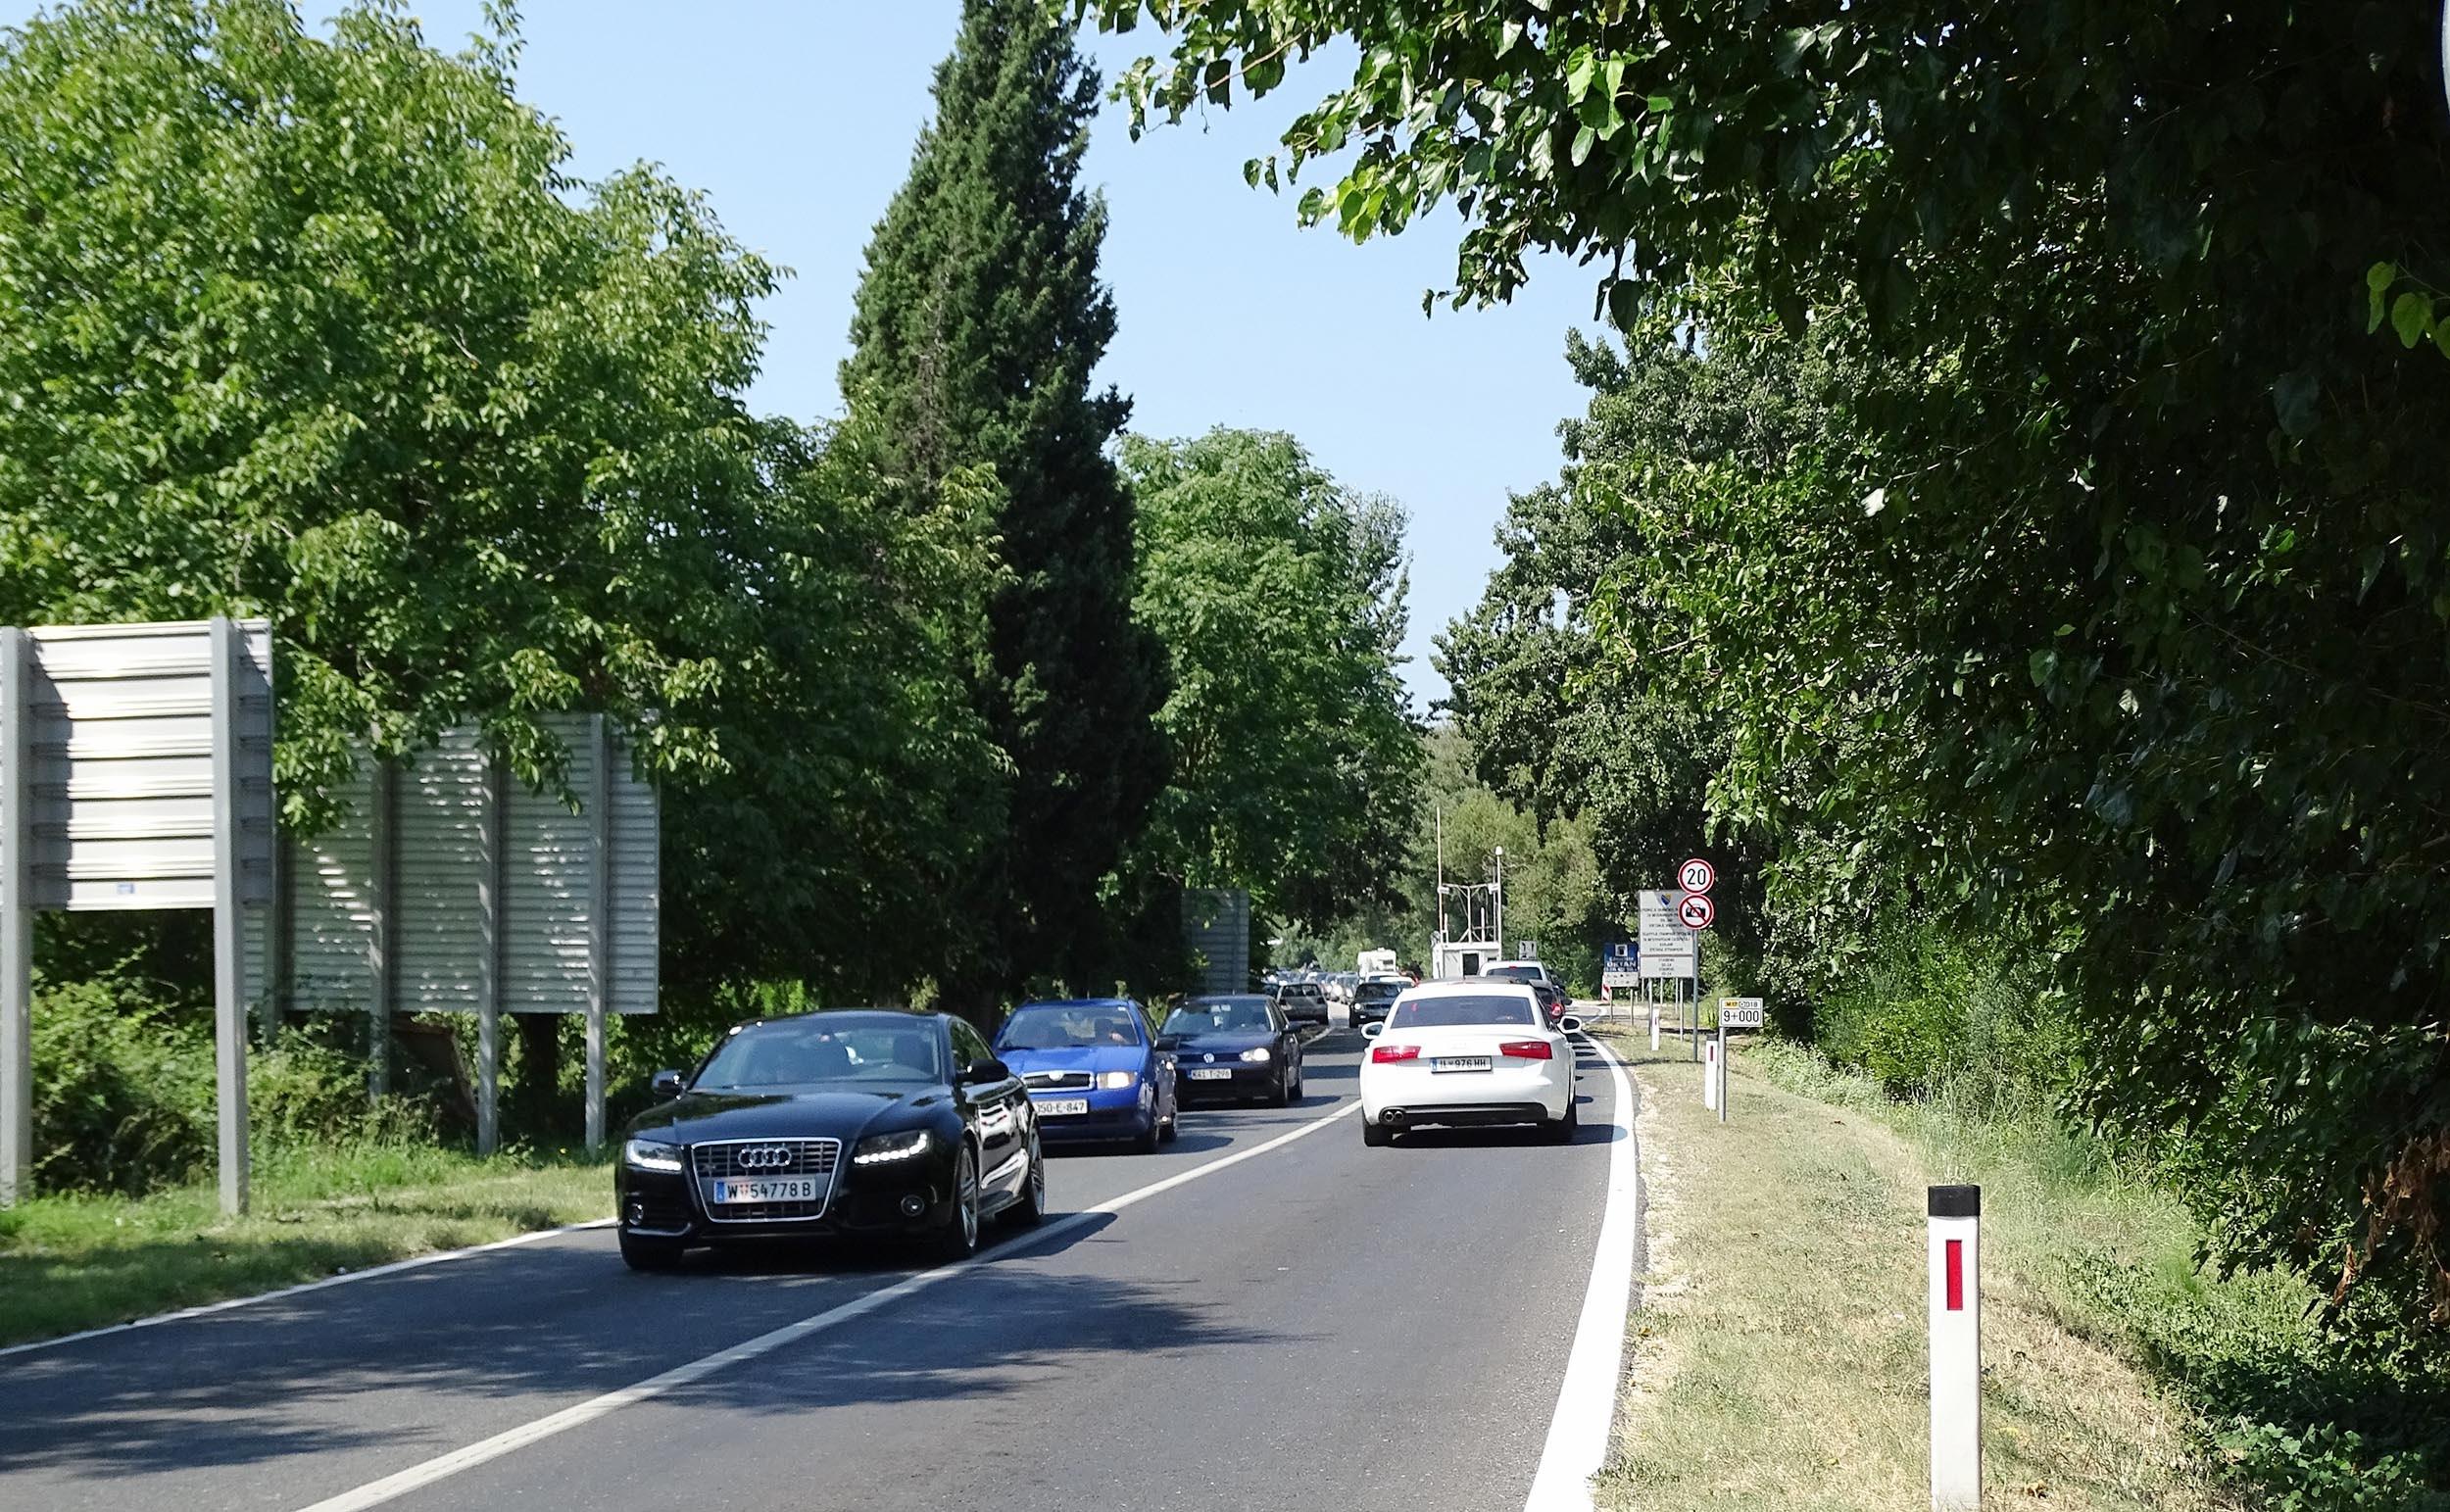 Usporeno se saobraća na putevima Livno-Kamensko i Doboj-Šešlije - Avaz